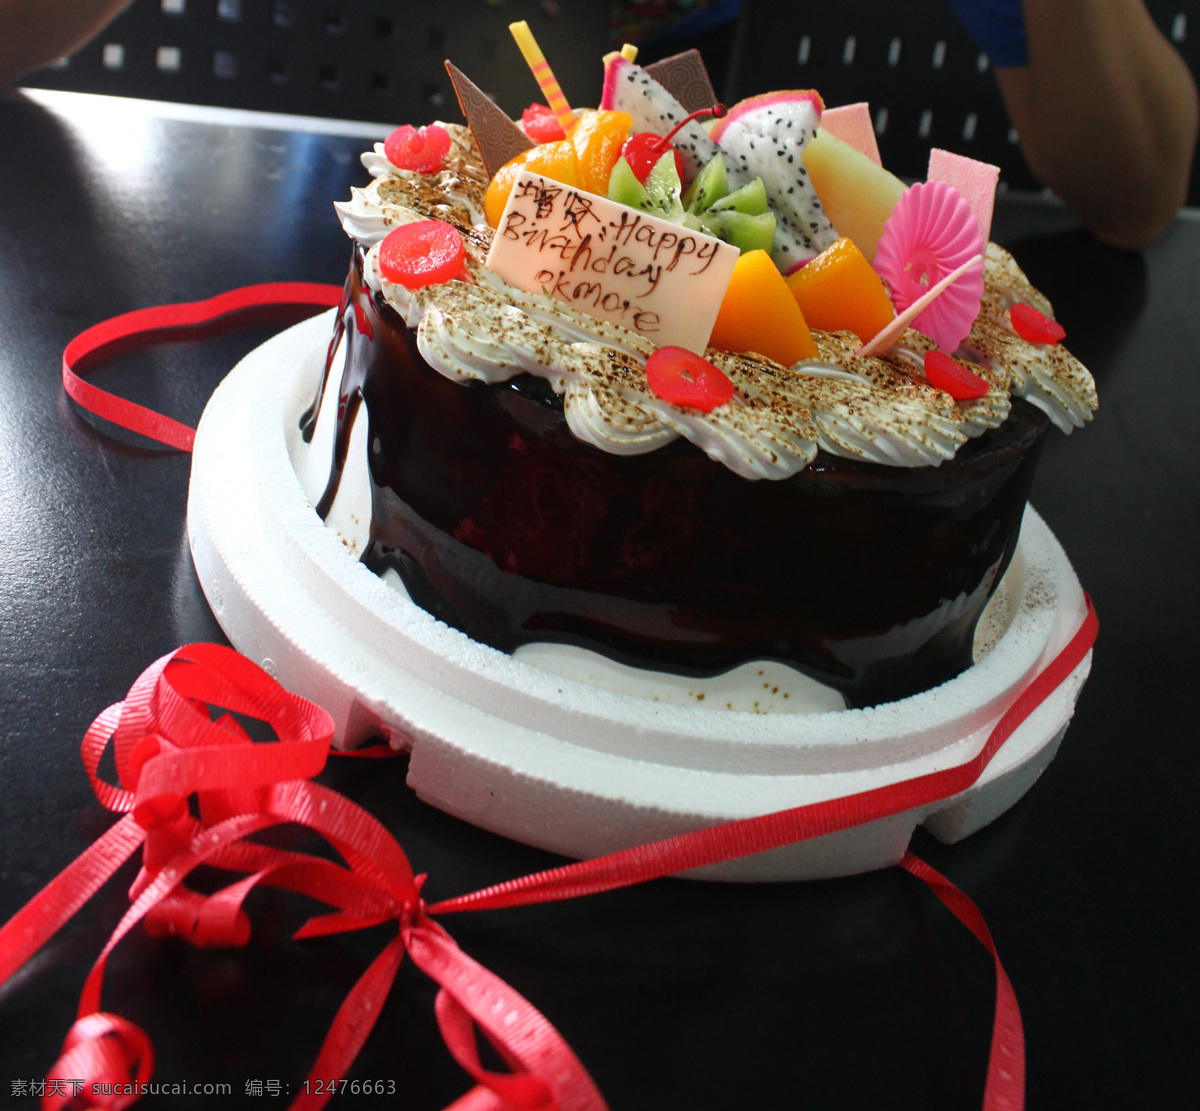 【全台】火龍果與莓果的完美結合，BAC再次推出限量季節性『粉紅圓舞曲』蛋糕！ - Yummyday美味日子